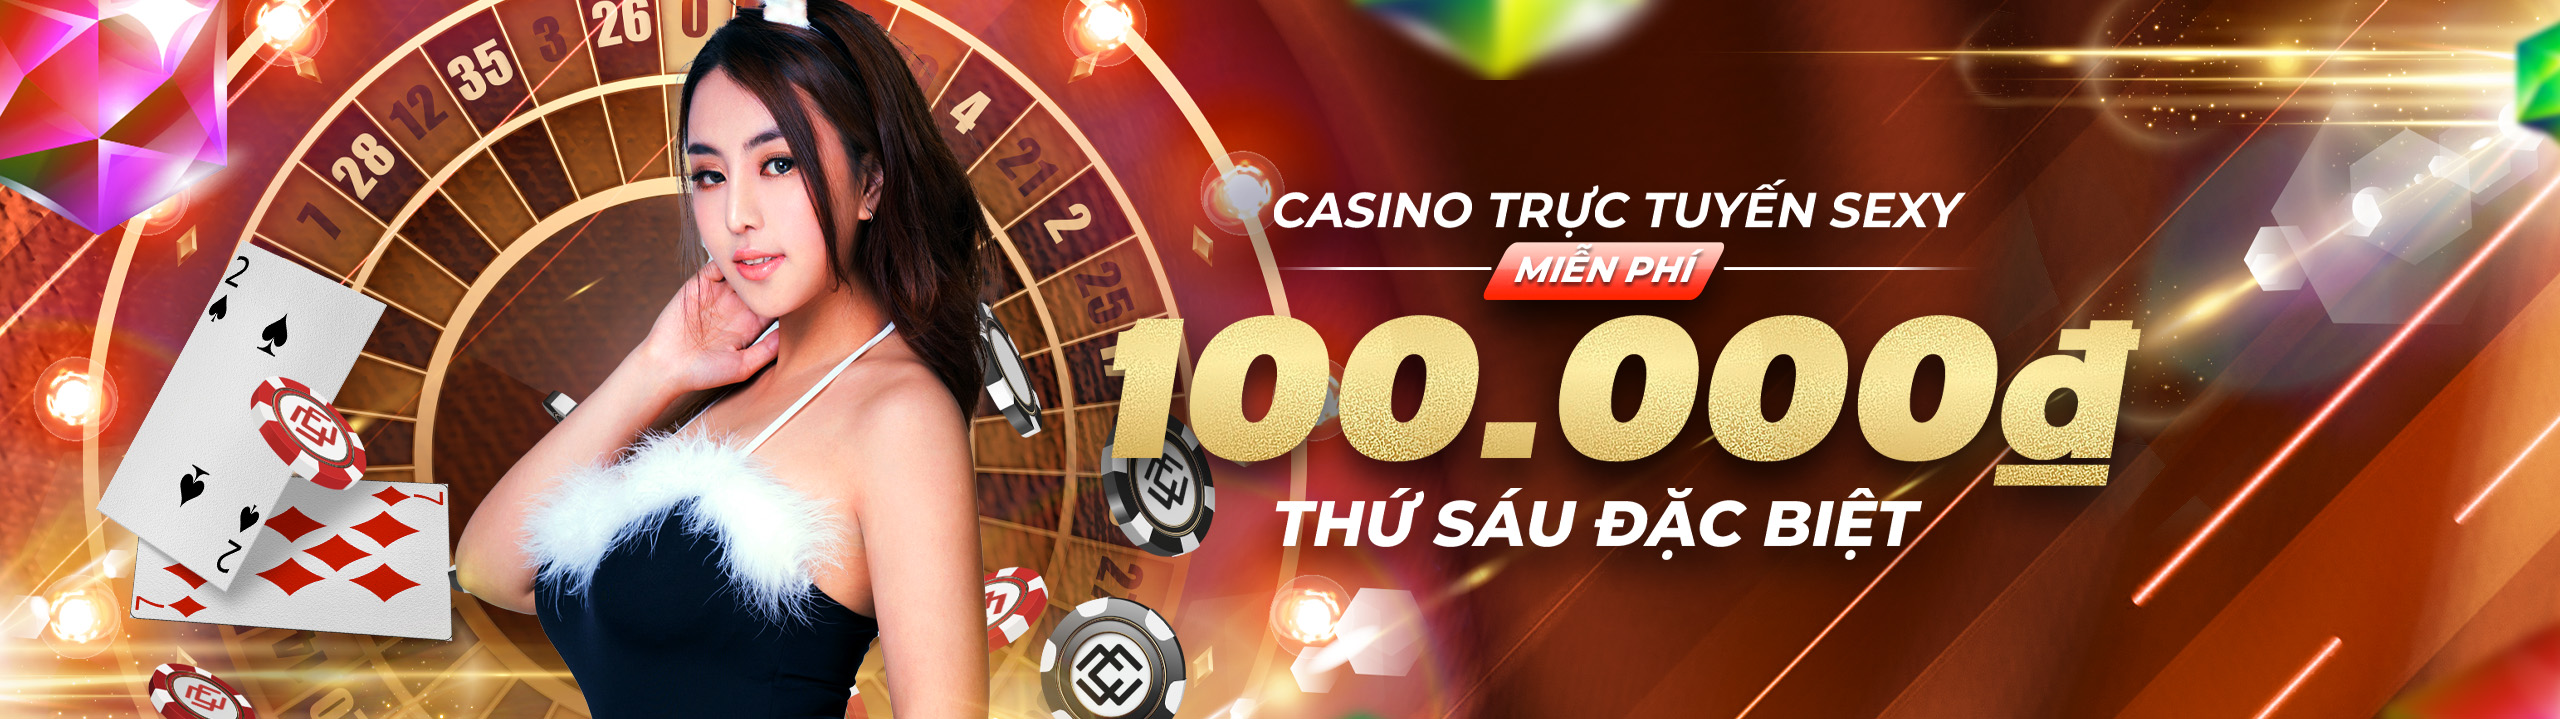 Thưởng nạp lại Thứ Sáu 100.000VND tại Casino Sexy